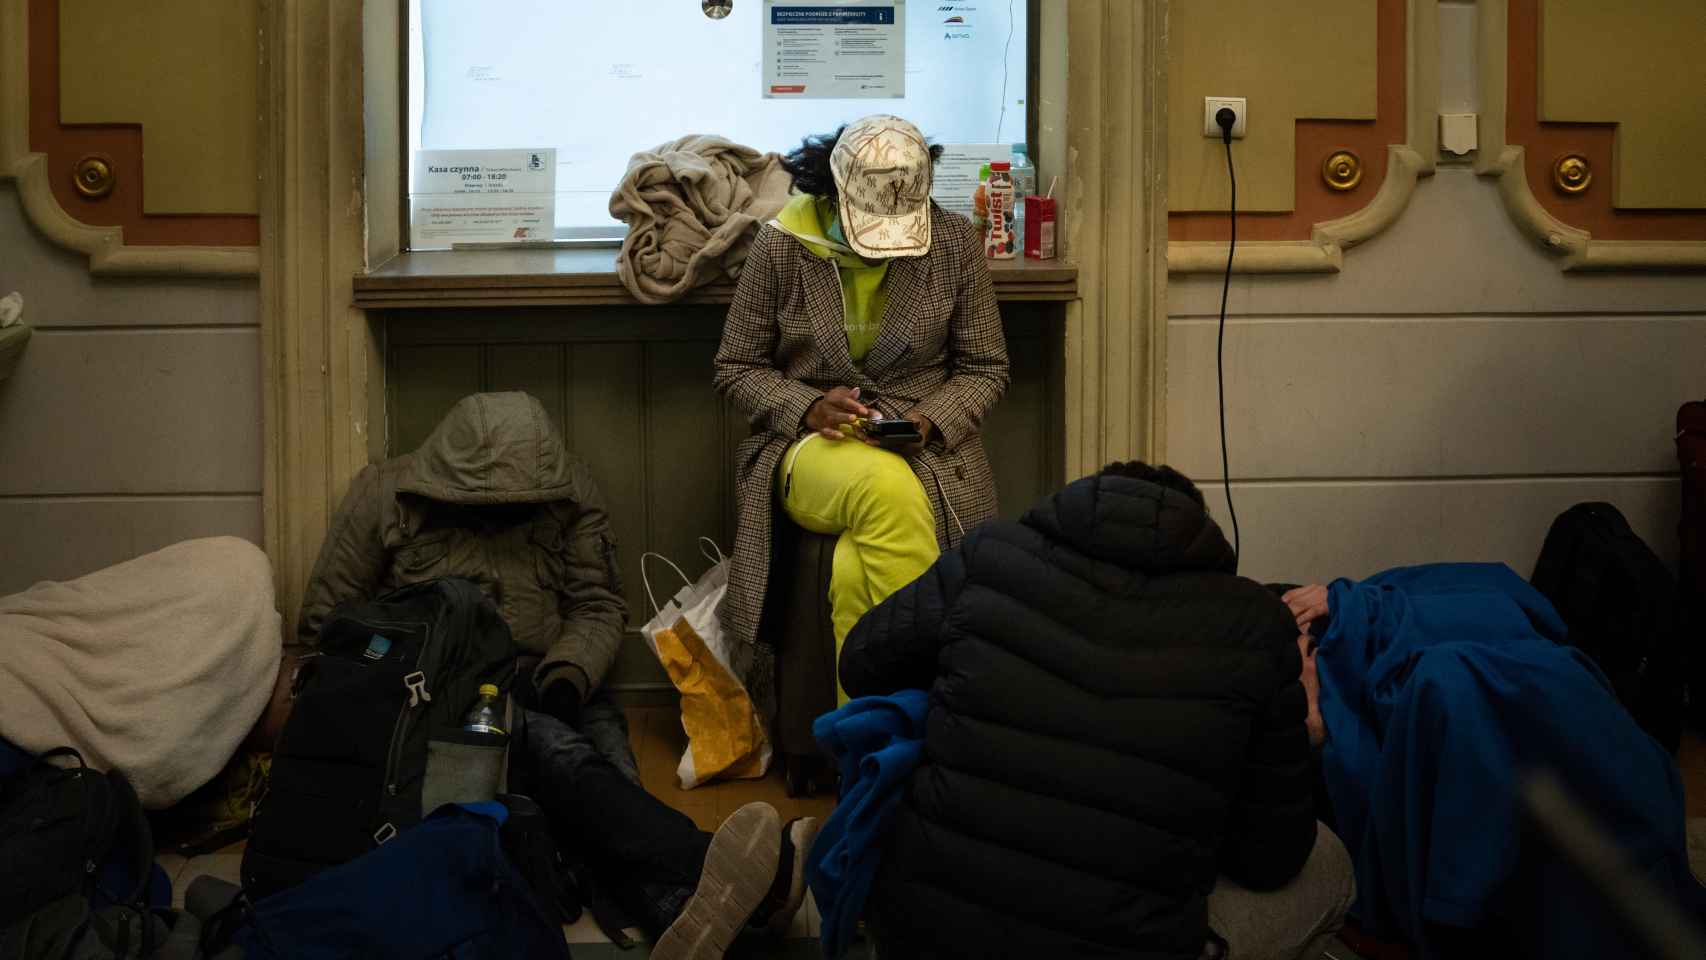 Tras recibir mantas, comida e internet, una estudiante mira el mapa de Europa mientras su compañero duerme en el interior de la estación.